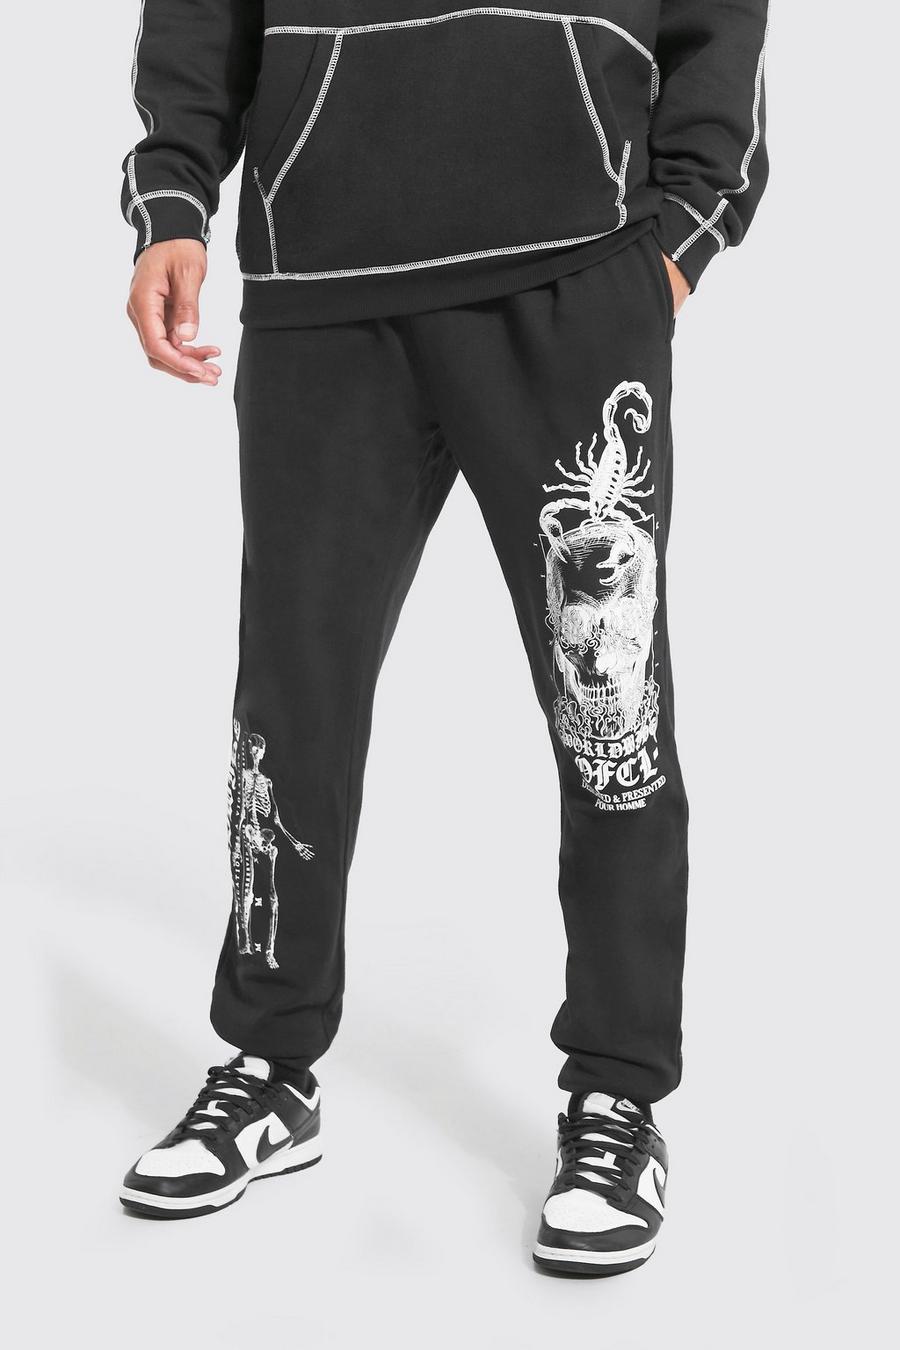 Pantalón deportivo Tall con estampado gráfico Worldwide de esqueleto, Black negro